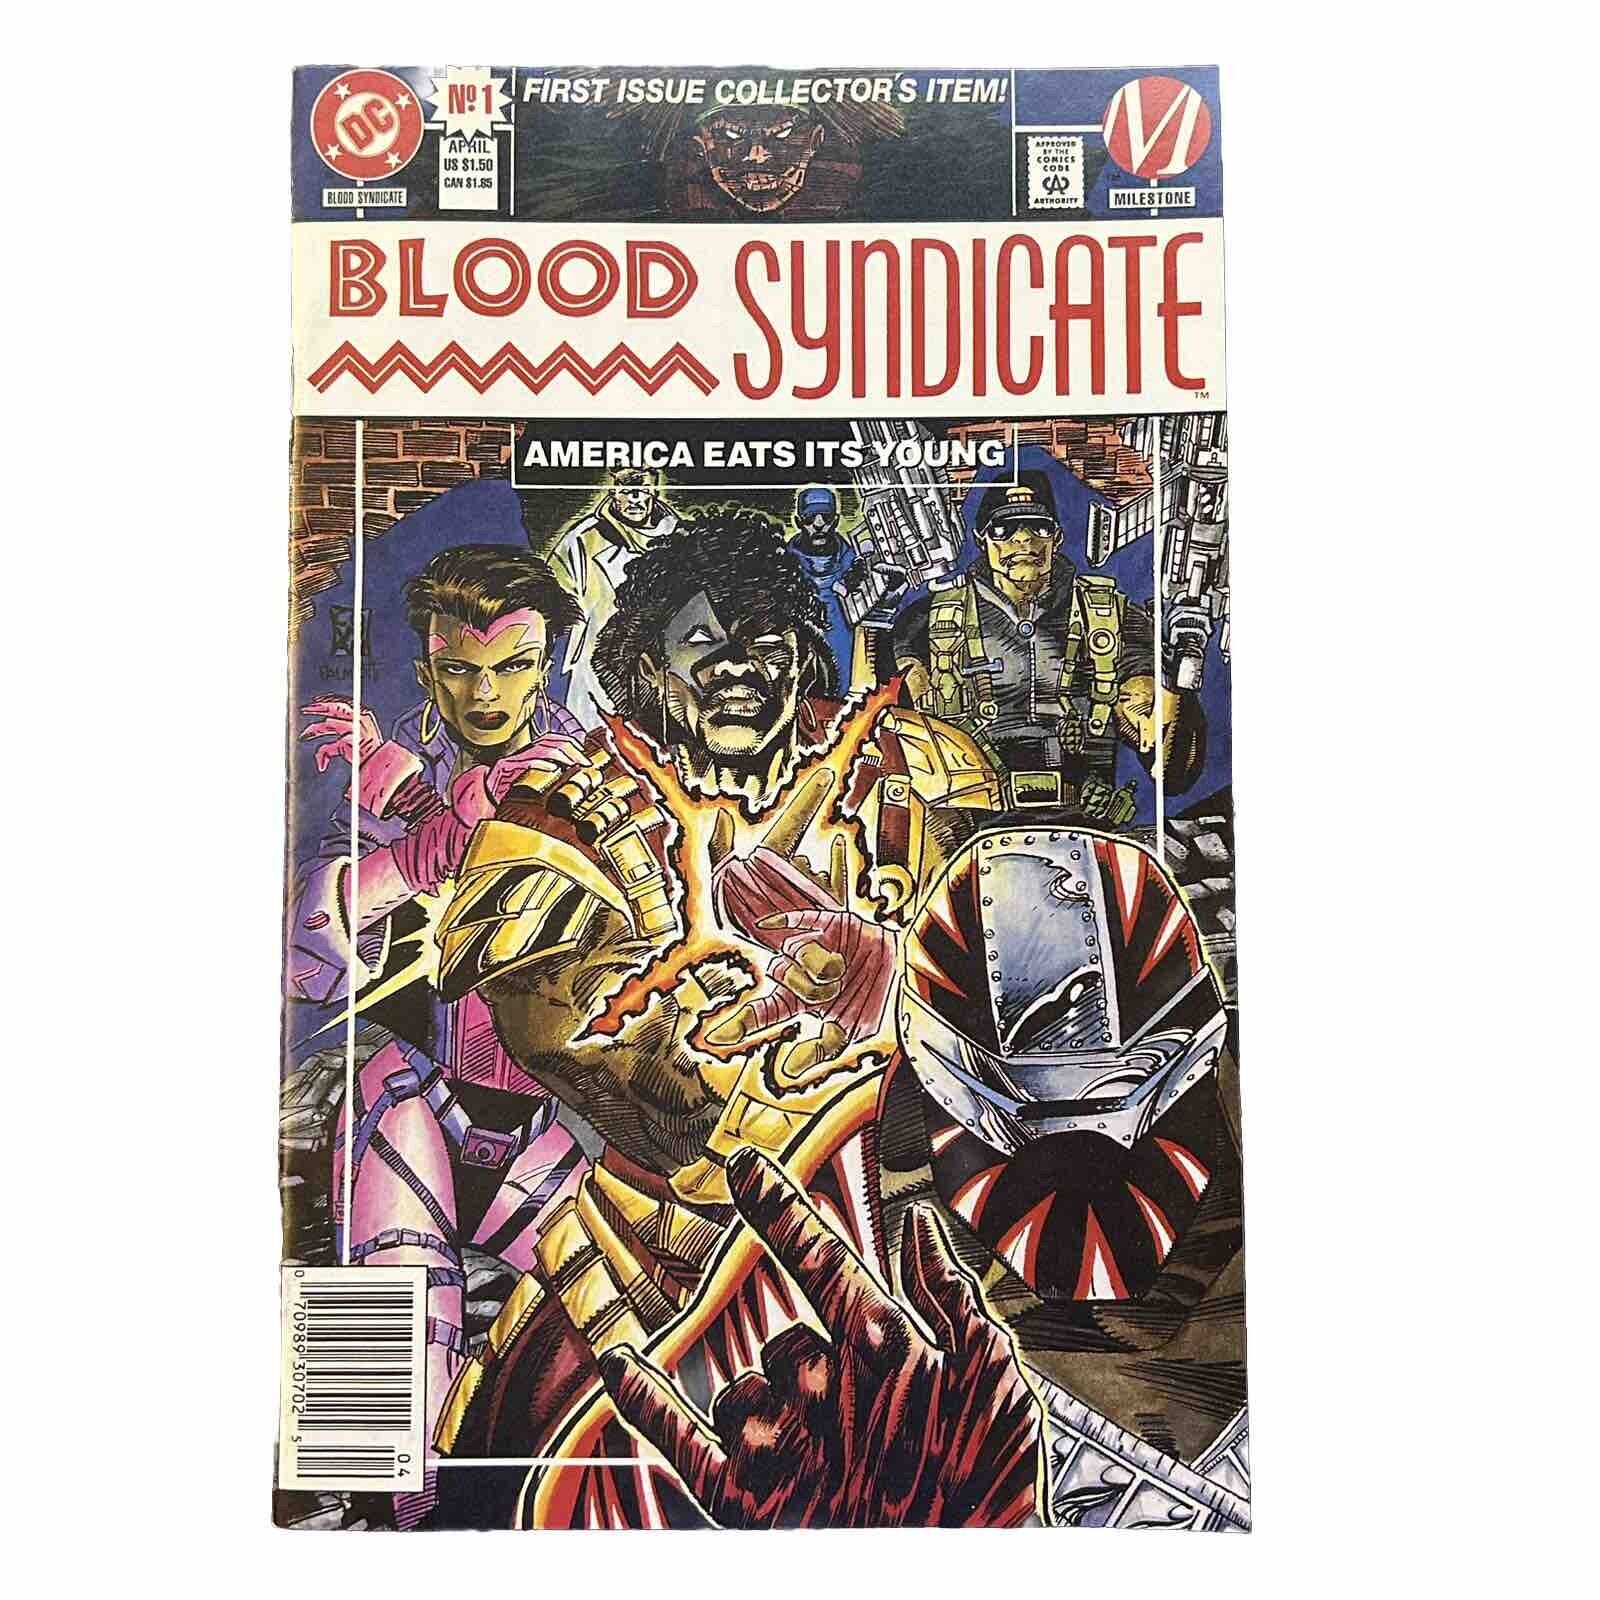 Blood Syndicate No. 1 - DC Comics - April 1993 - VF+